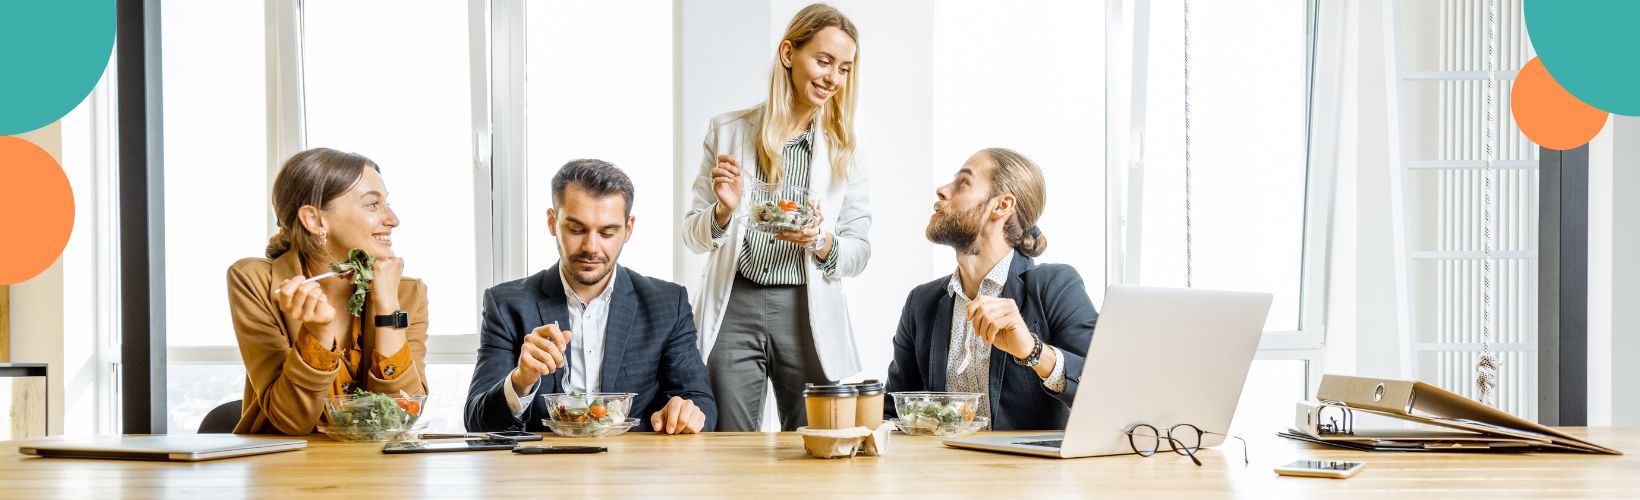 dieta w pracy biurowej, co jeść w pracy siedzącej? dieta dla zapracowanych